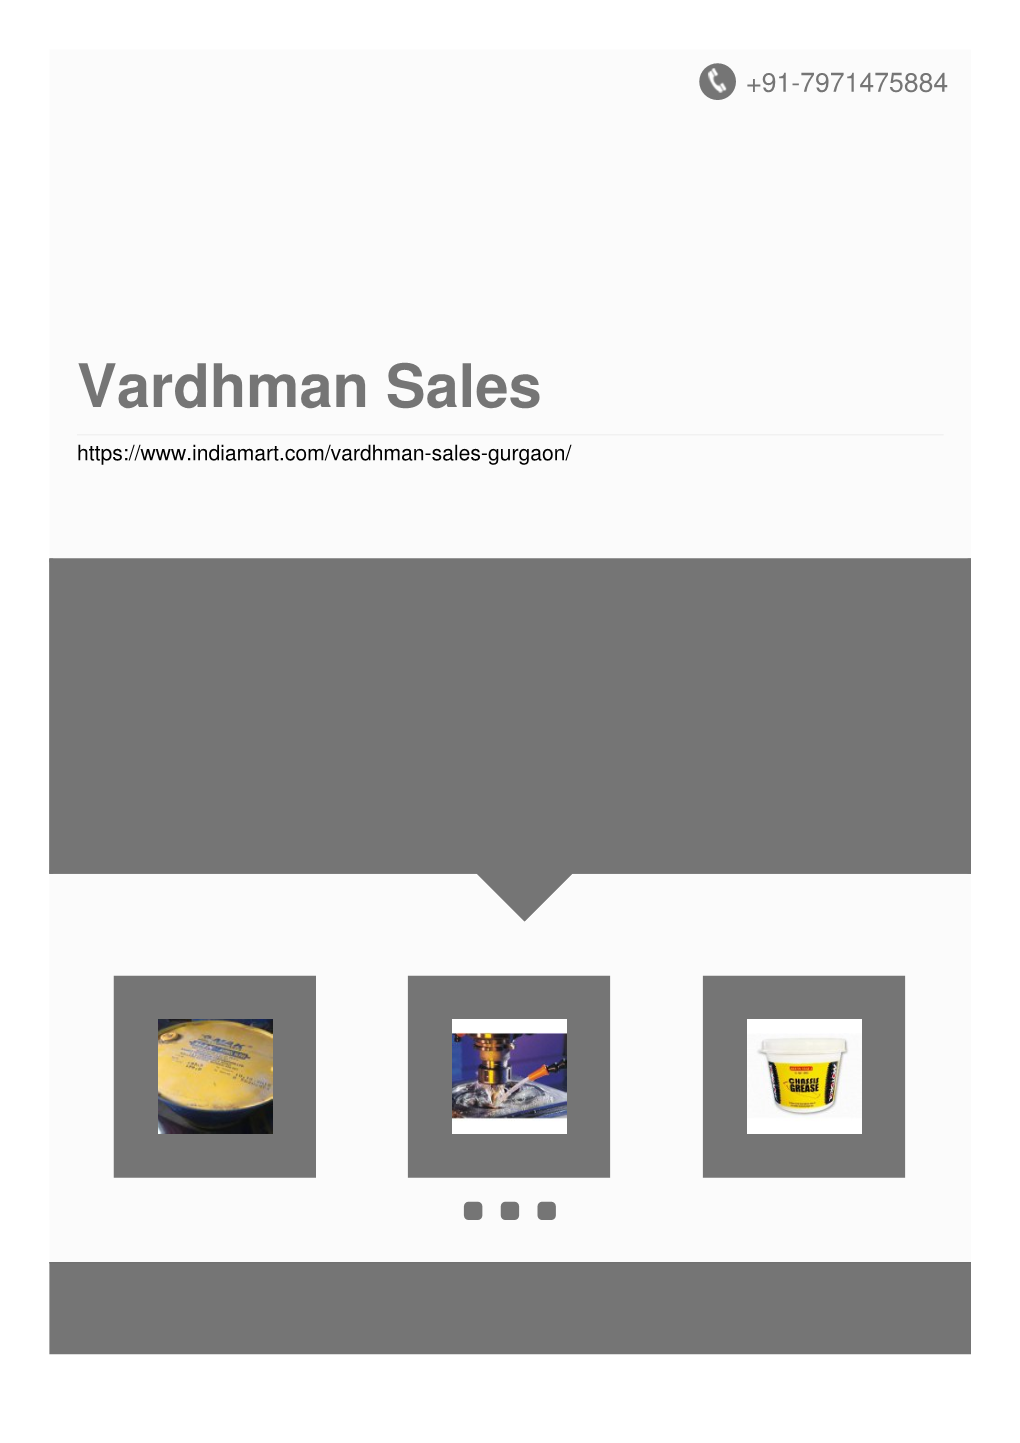 Vardhman Sales About Us